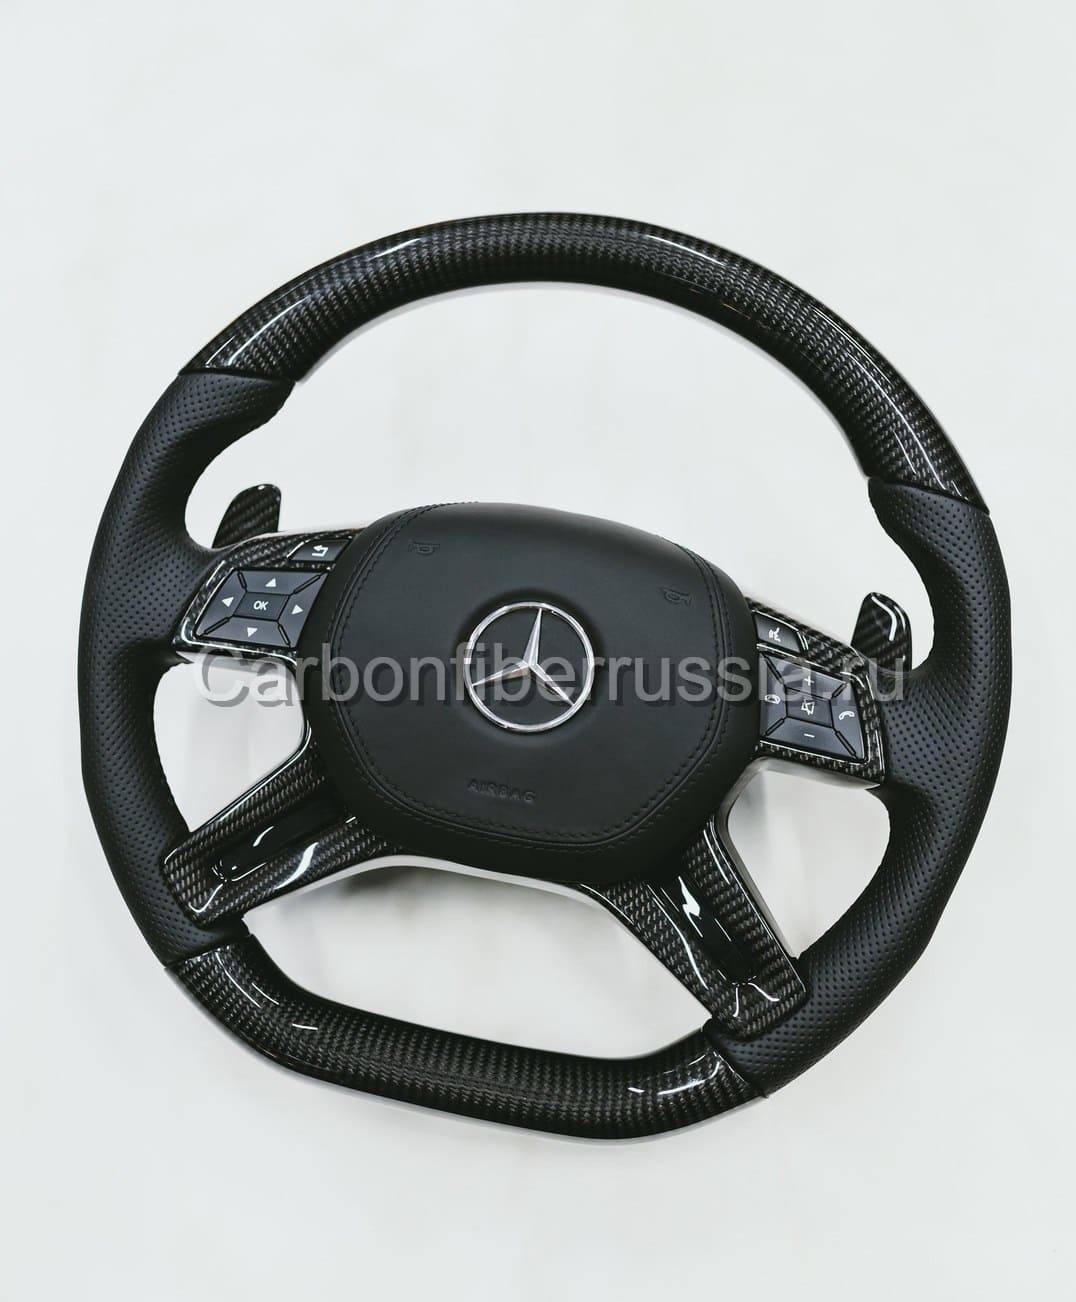 Карбоновый руль для Mercedes-Benz | CarbonFiberRussia